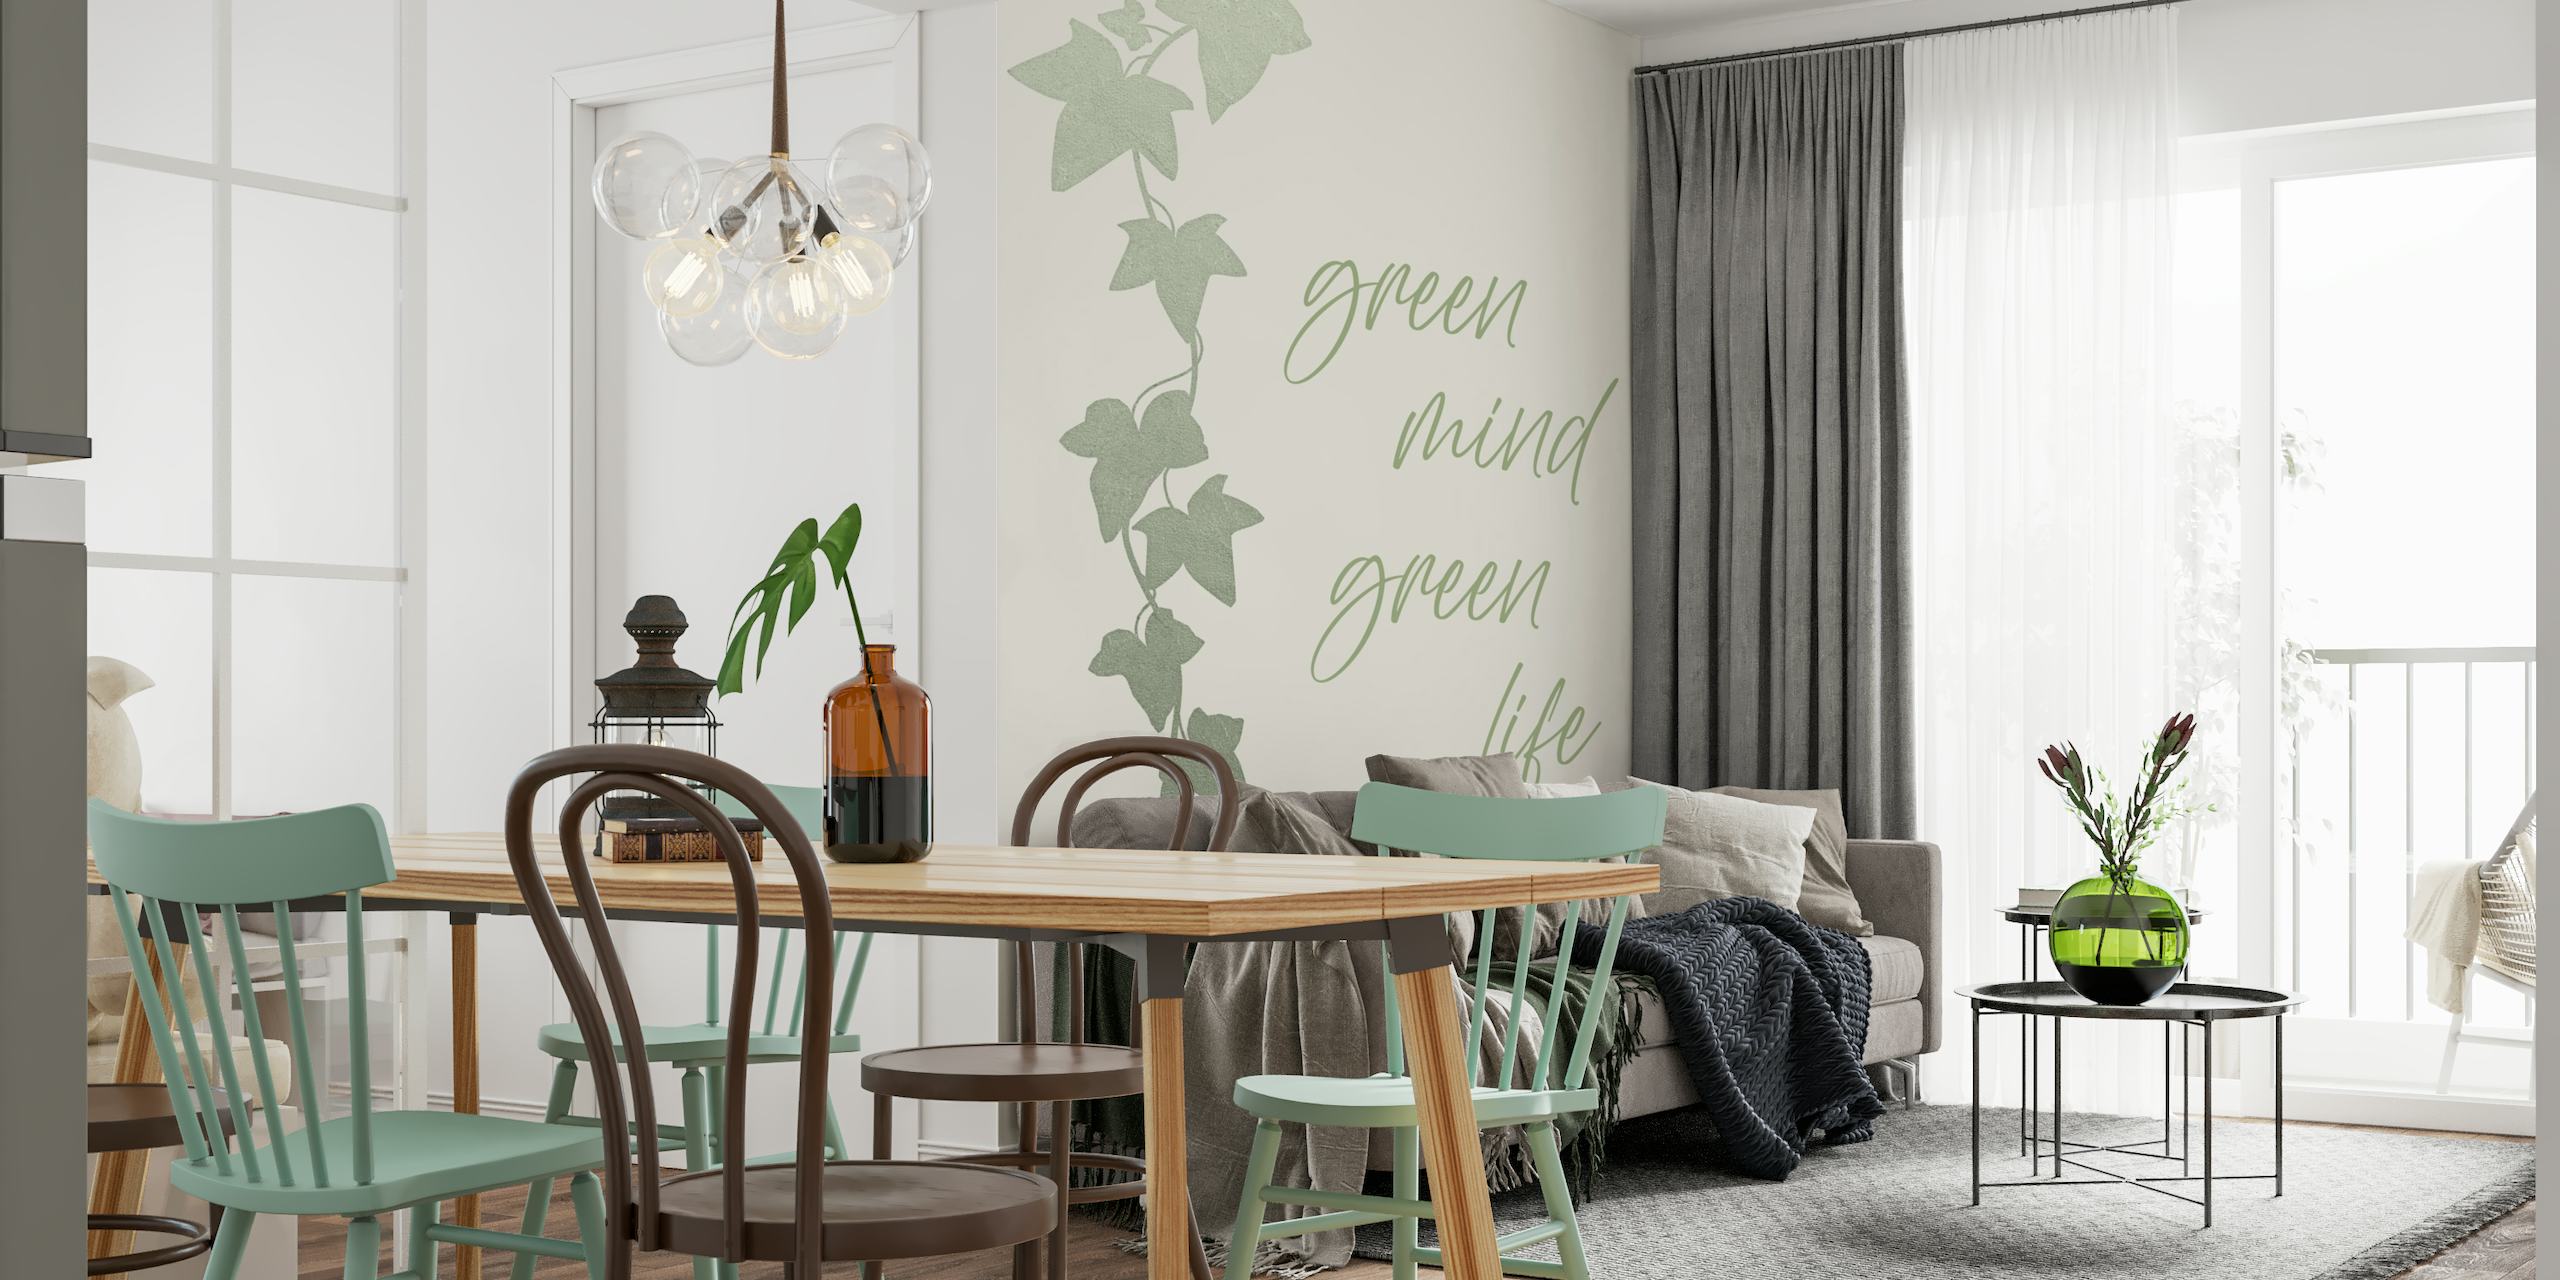 Grønne efeublade vægmaleri med 'Green mind - Green life' script